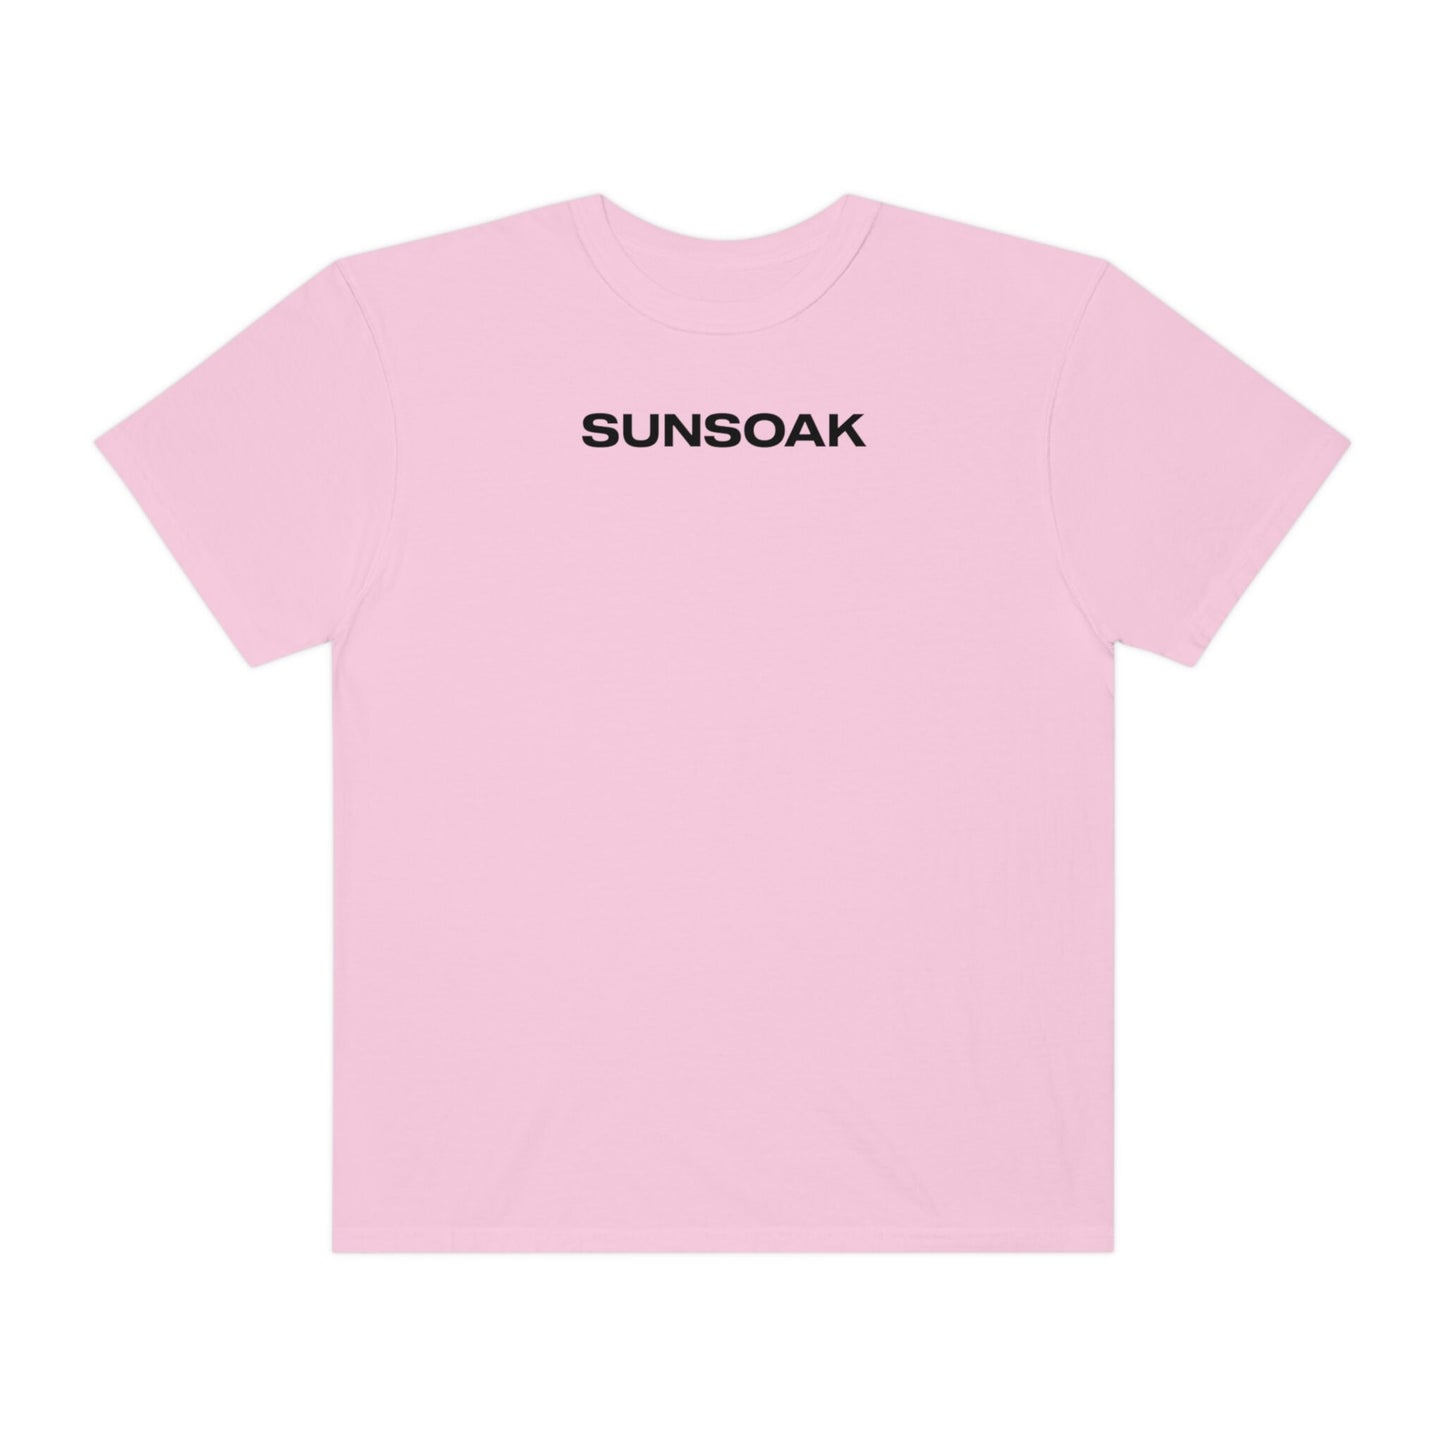 SUNSOAK "Logo" (Multiple colors)